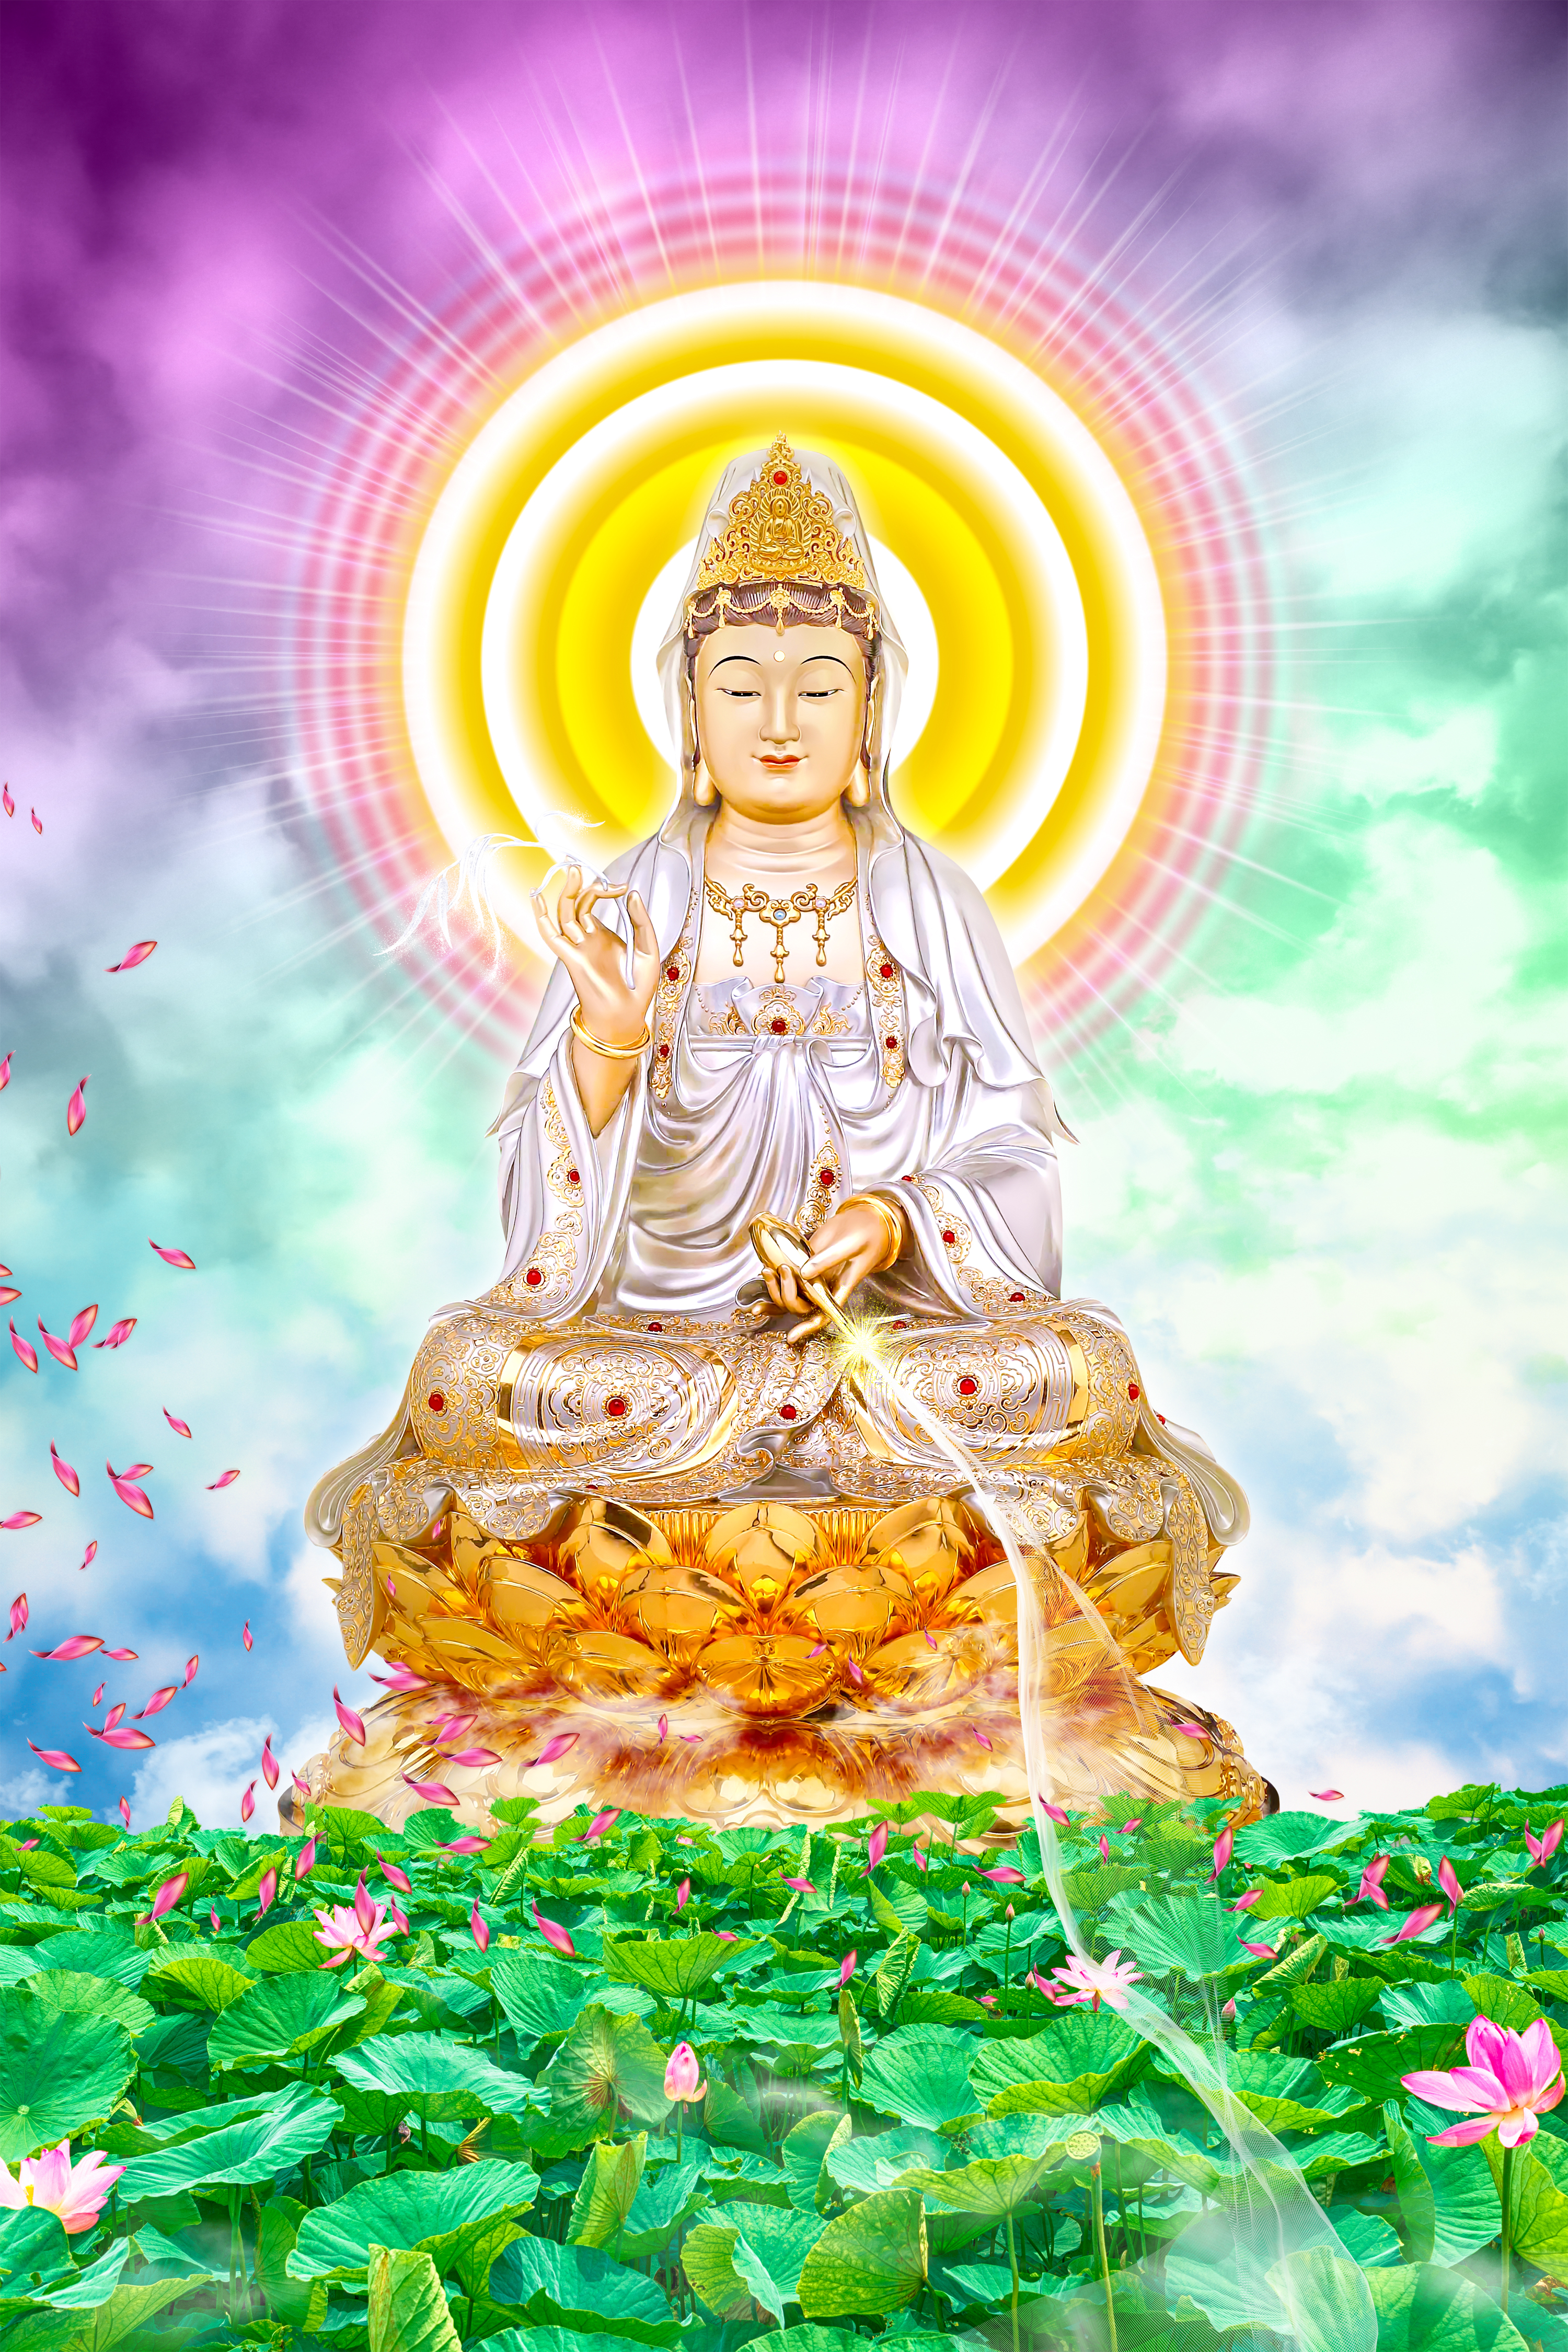 Quan The Am Guanyin Buddha: Thiền và cầu nguyện cùng Quan Thế Âm Quang Minh - Đức Phật với những bức ảnh mang đến cảm giác yên bình và động viên. Tại đây, bạn sẽ có cơ hội thực hành thiền và lắng nghe kinh nói về sự từ bi và thương yêu của Quan Thế Âm. Bức ảnh giúp bạn và gia đình có những giây phút tĩnh lặng và suy ngẫm trước sự thiêng liêng của tâm Linh.